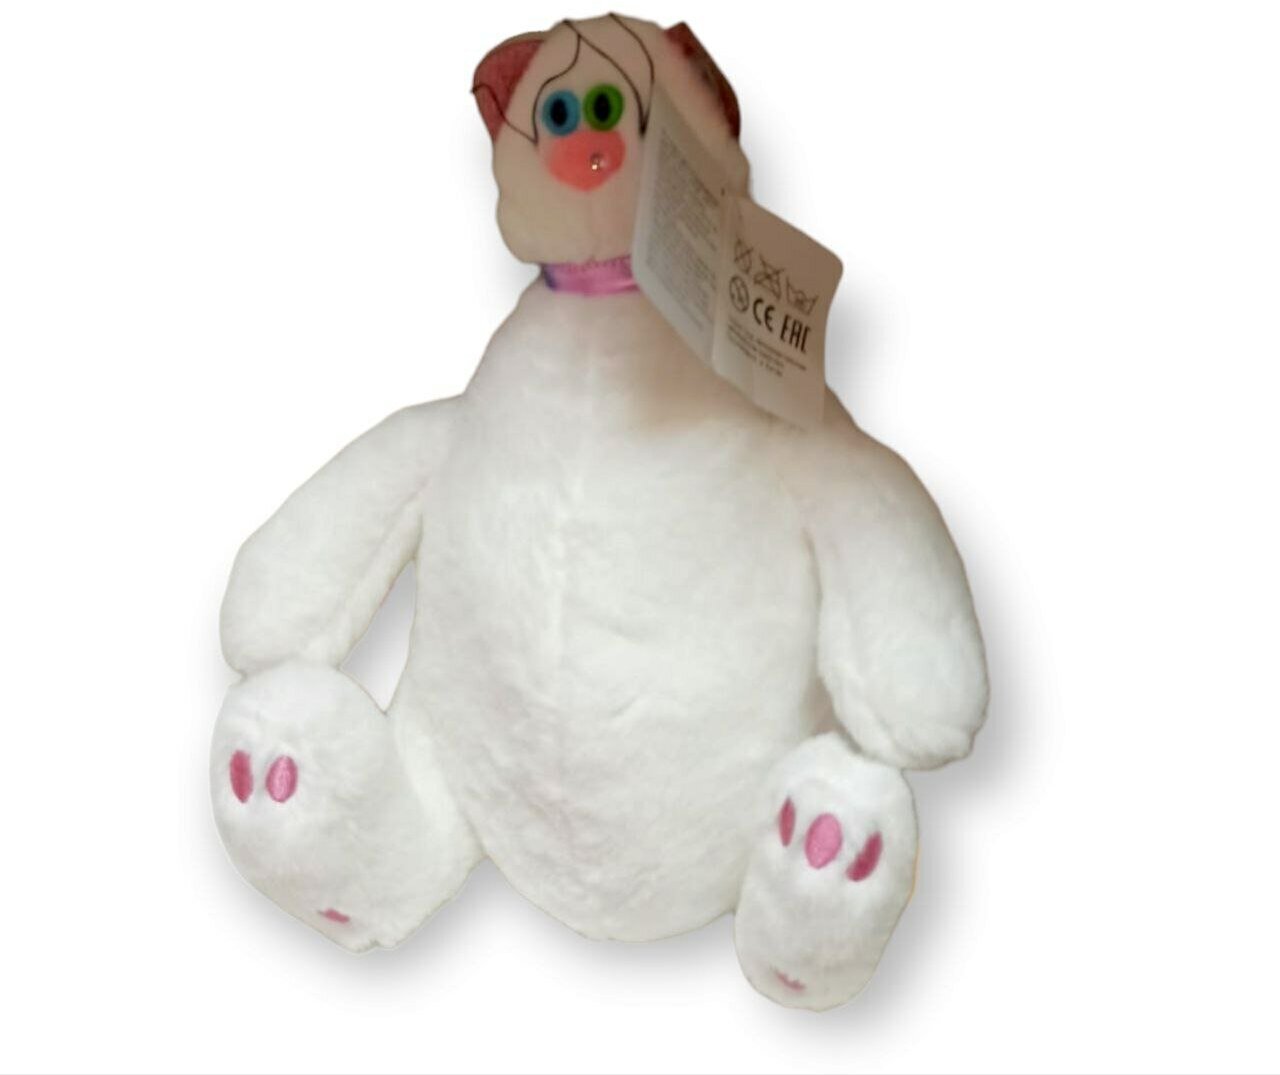 Мягкая игрушка Кошка плюшевая белая с ленточкой на шее 30 см